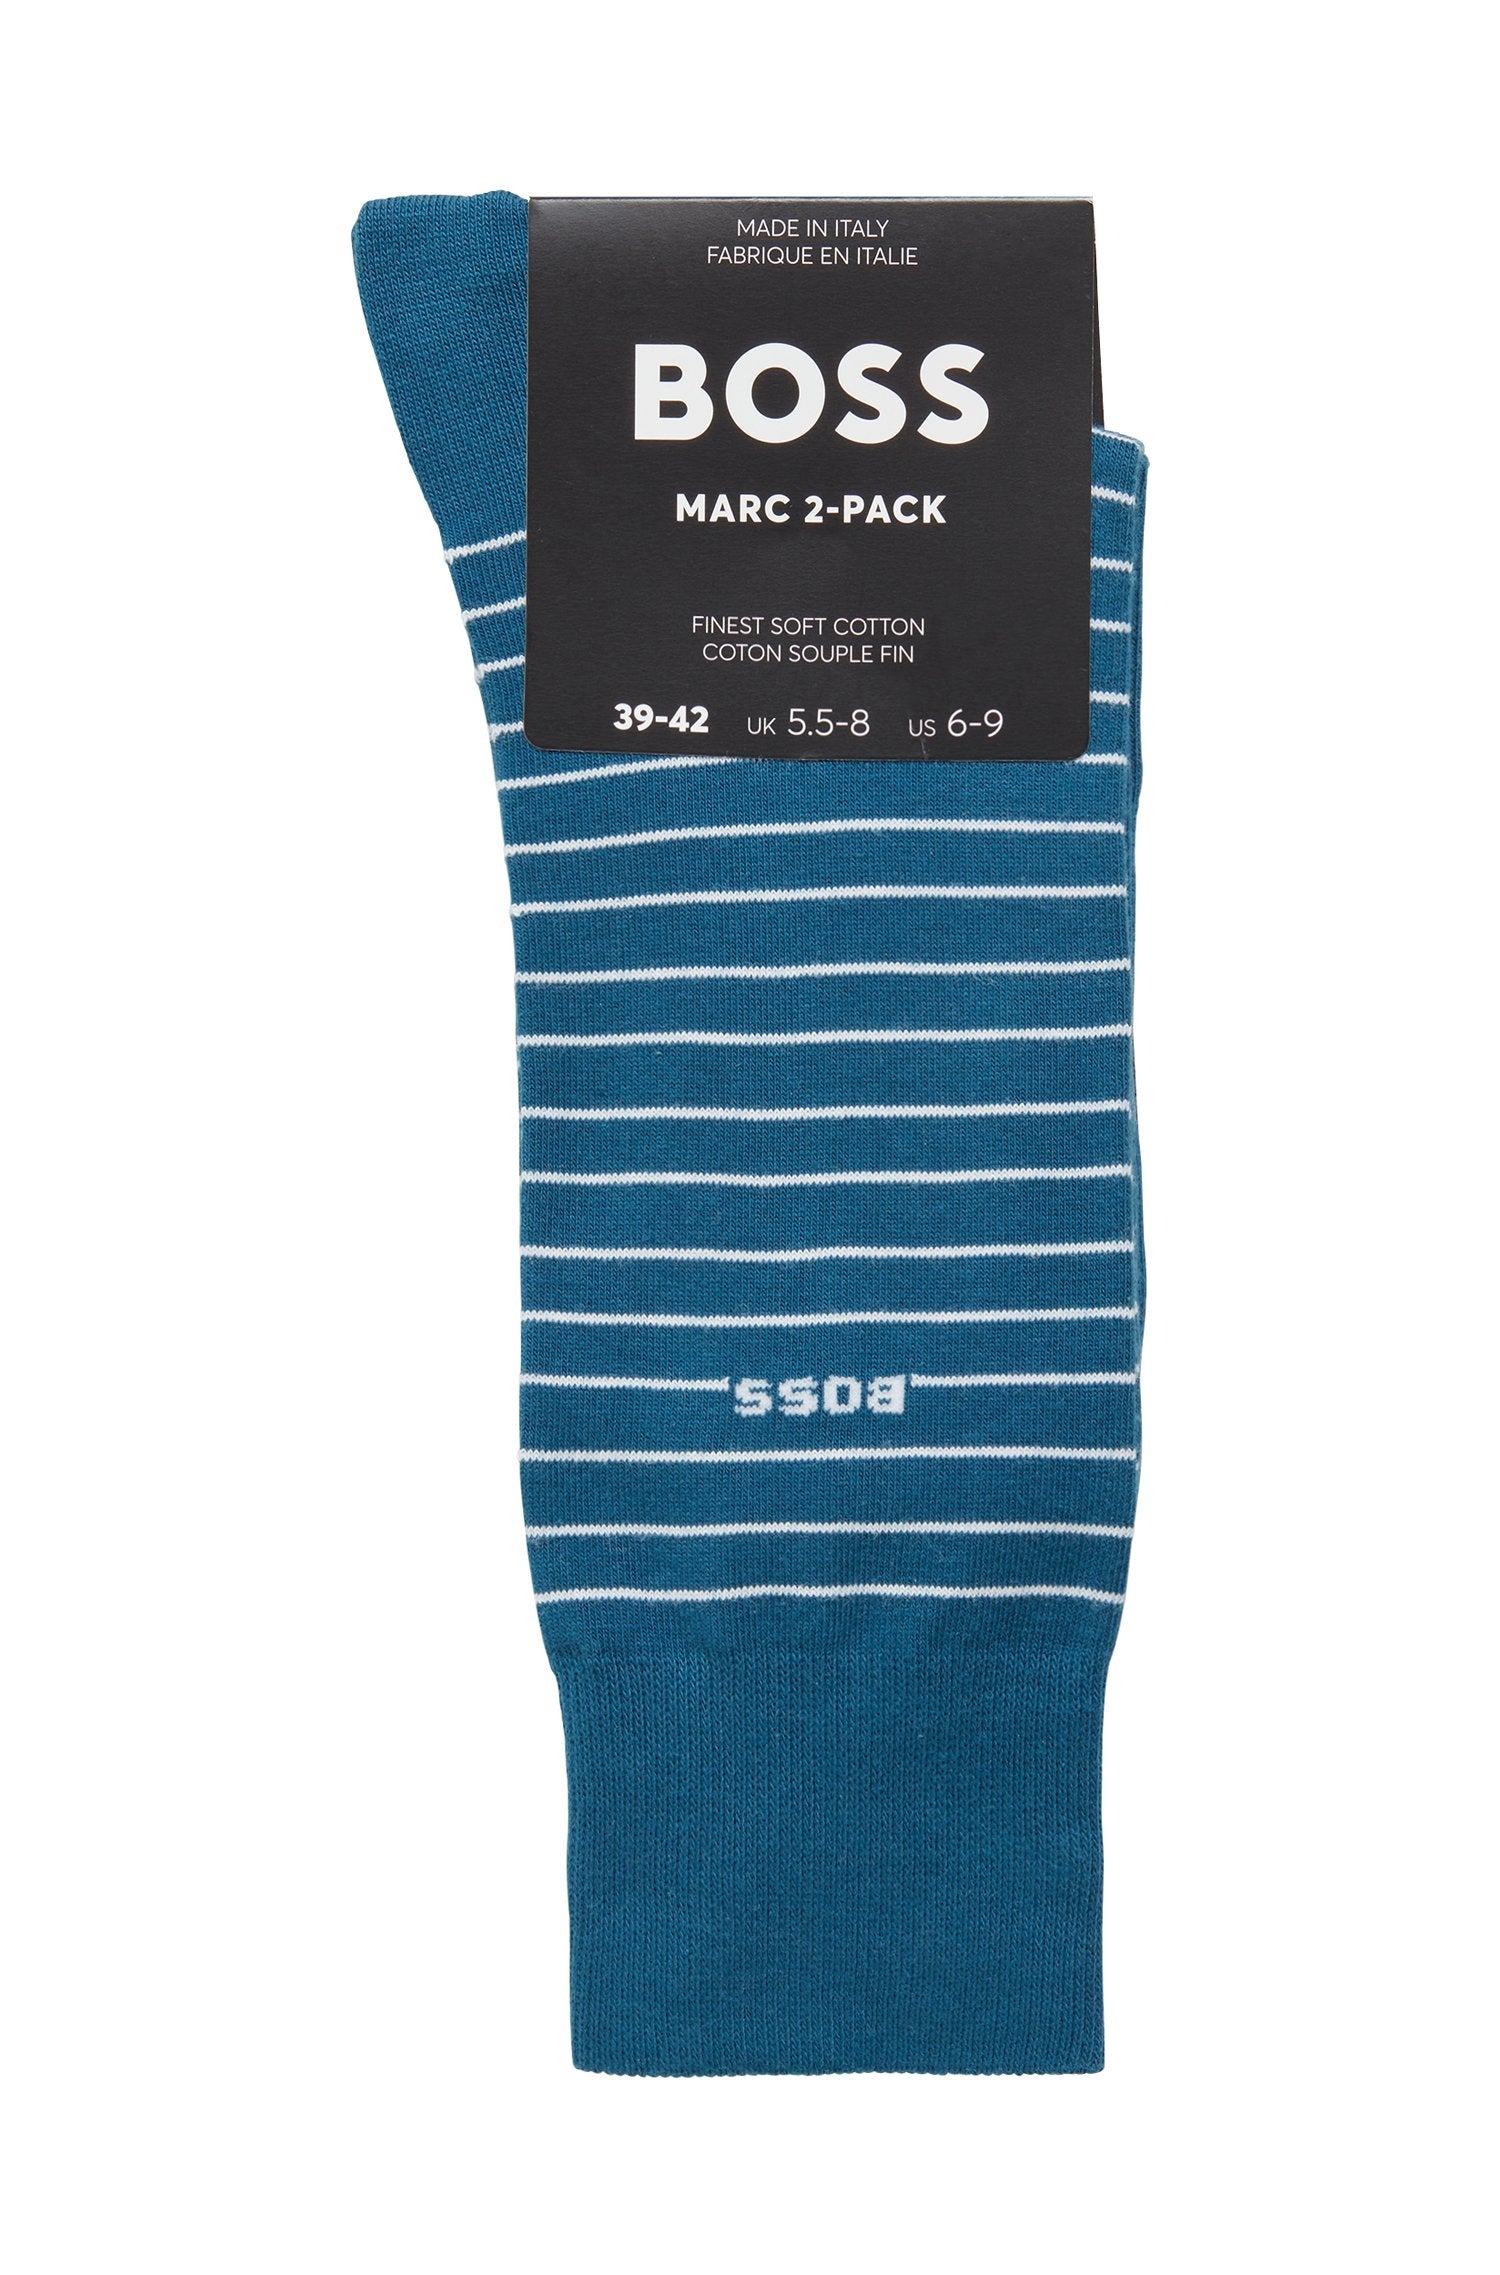 BOSS 2 Pack RS Marc Socks 492 Open Blue